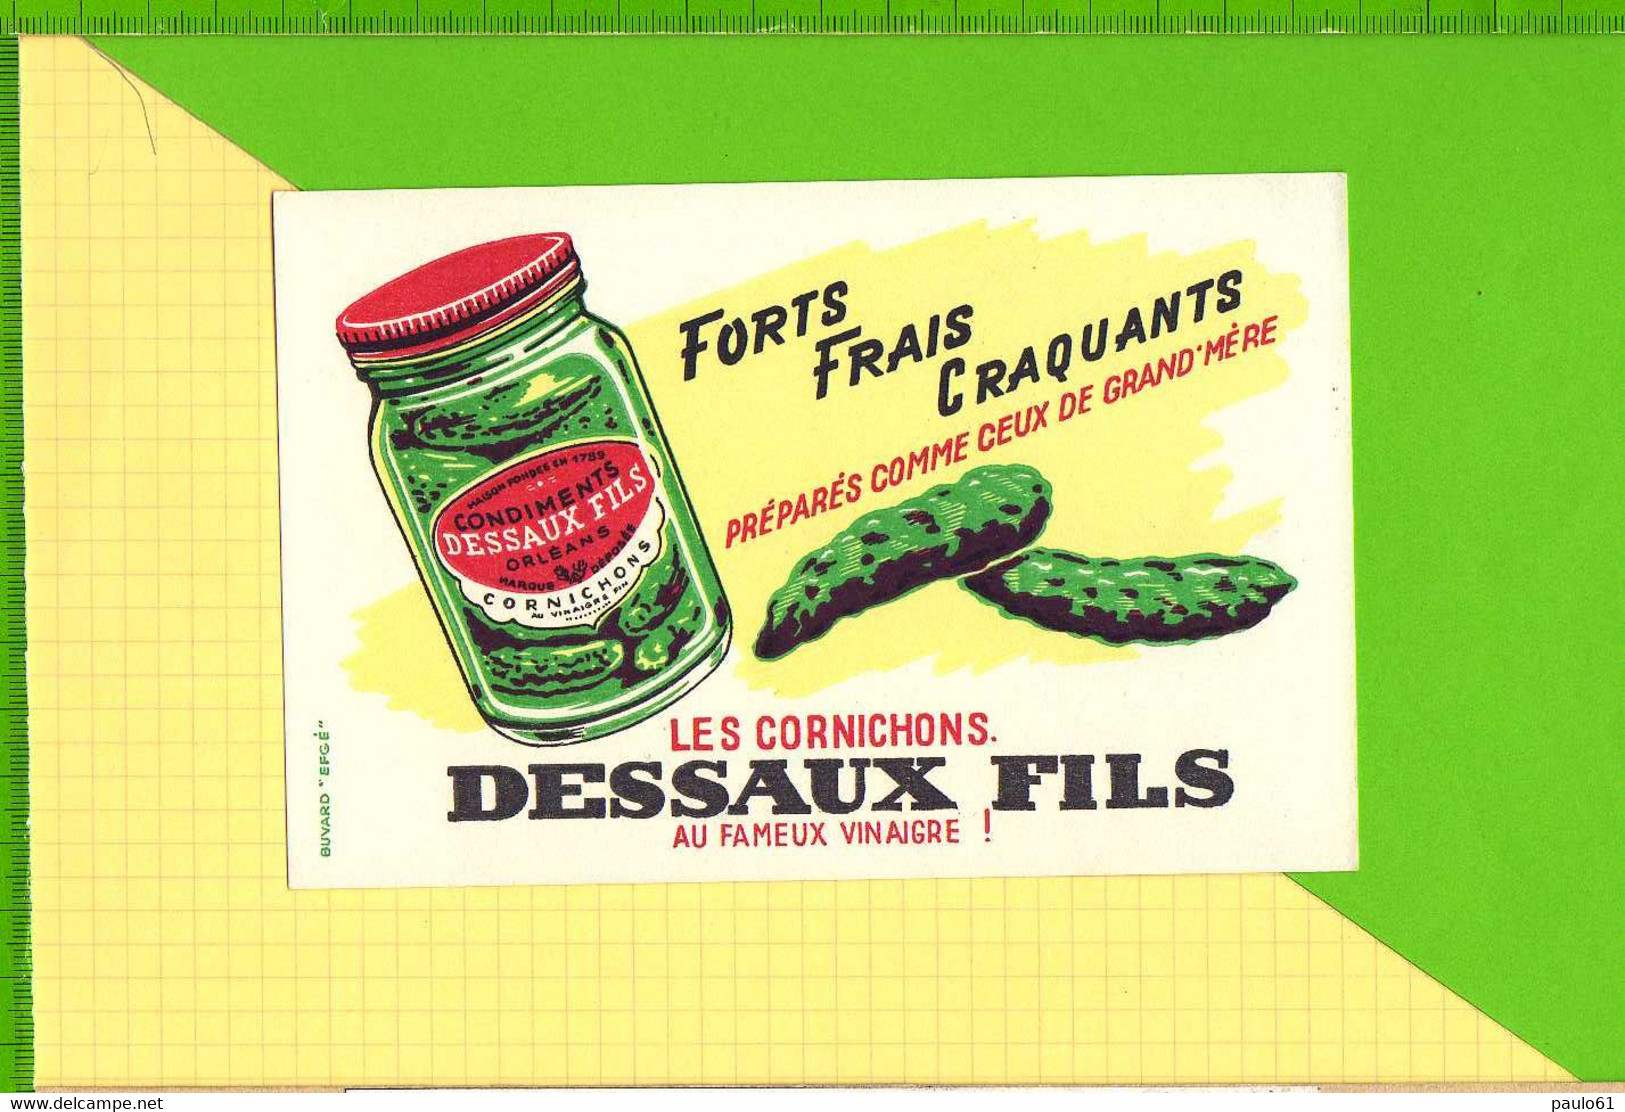 BUVARD & Blotting Paper :  Les Cornichons DESSAUX FILS Forts Frais Craquants - Moutardes